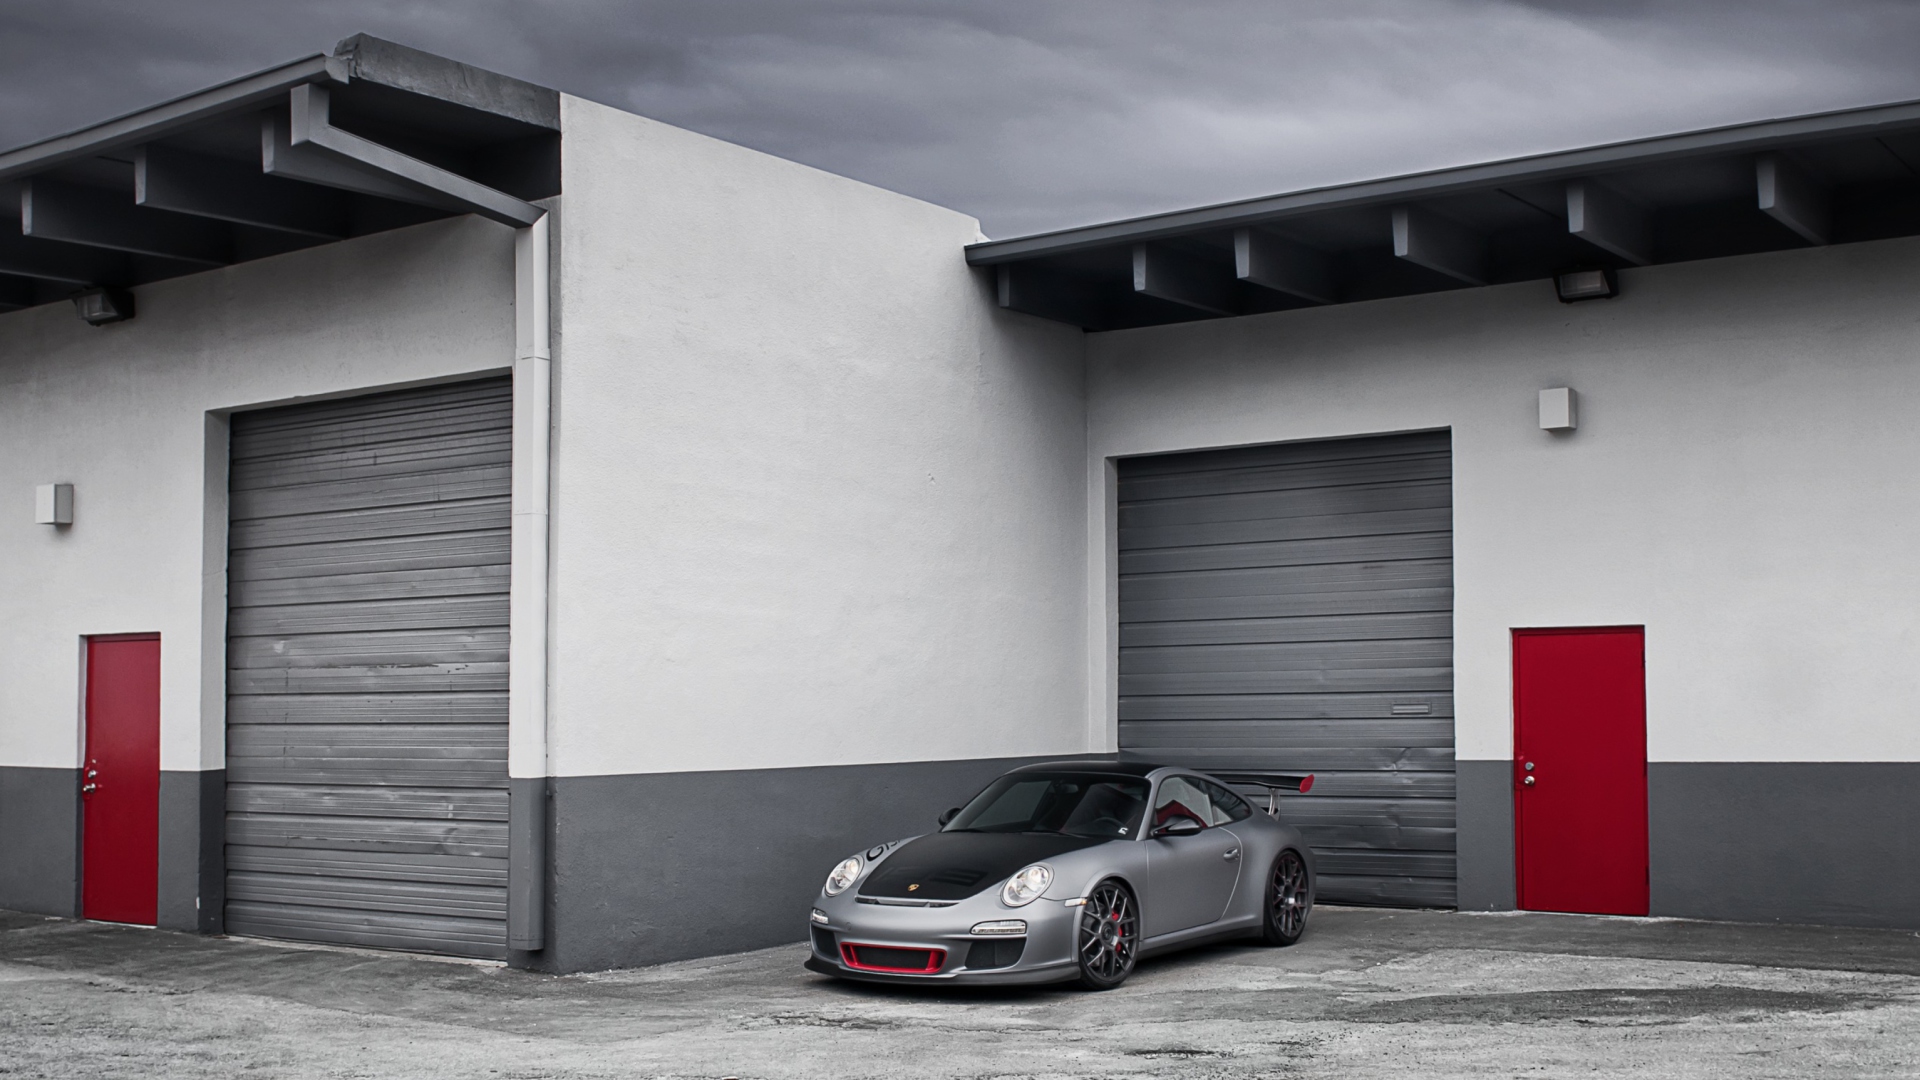 Porsche 911 Near Garage screenshot #1 1920x1080